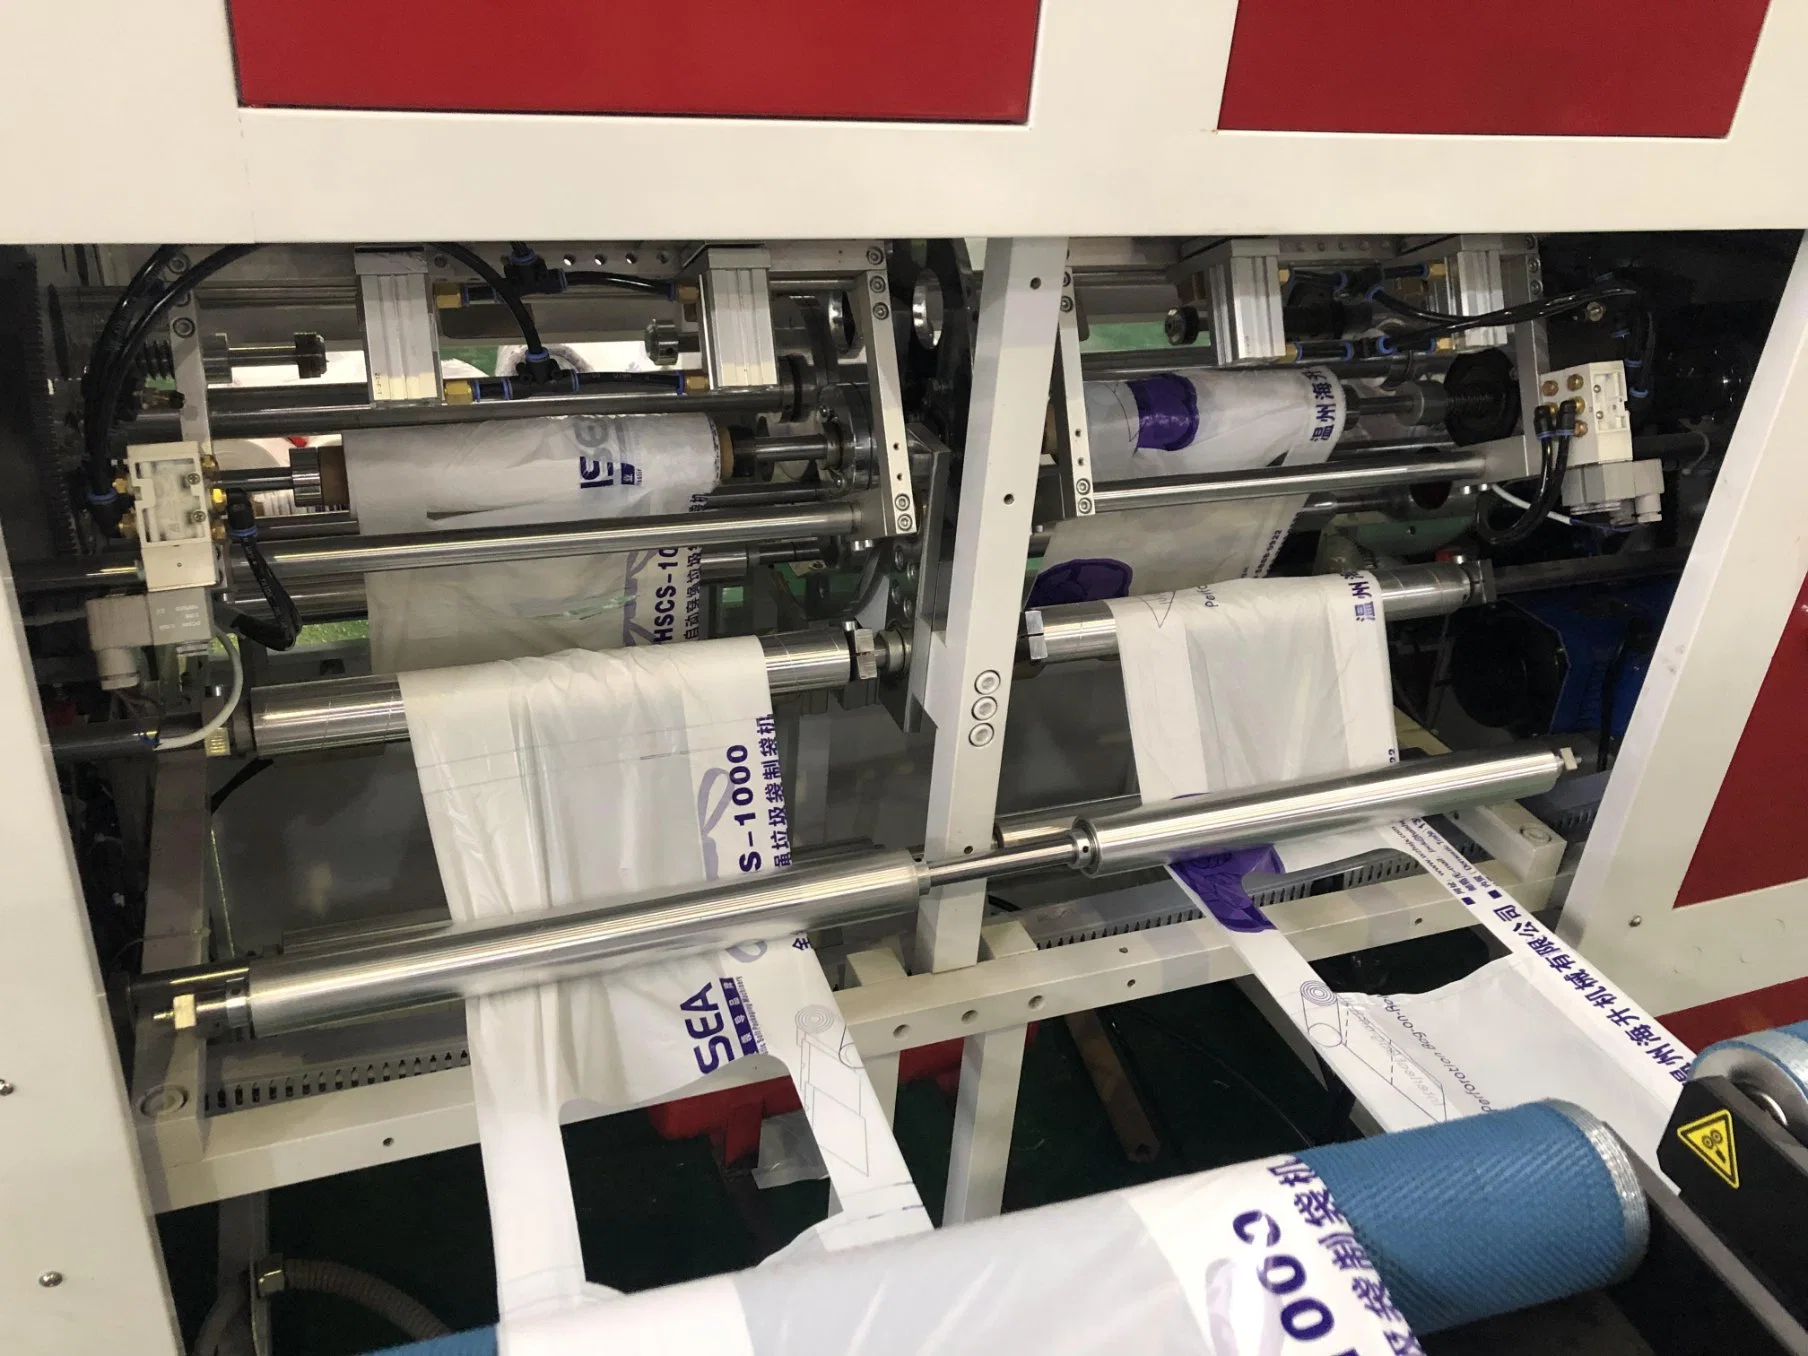 T-shirt embalagem em sacos de plástico do rolo de supermercado Sacola de Compras sacolas de supermercado no rolo fazendo a máquina com a fenda do reforço de fecho